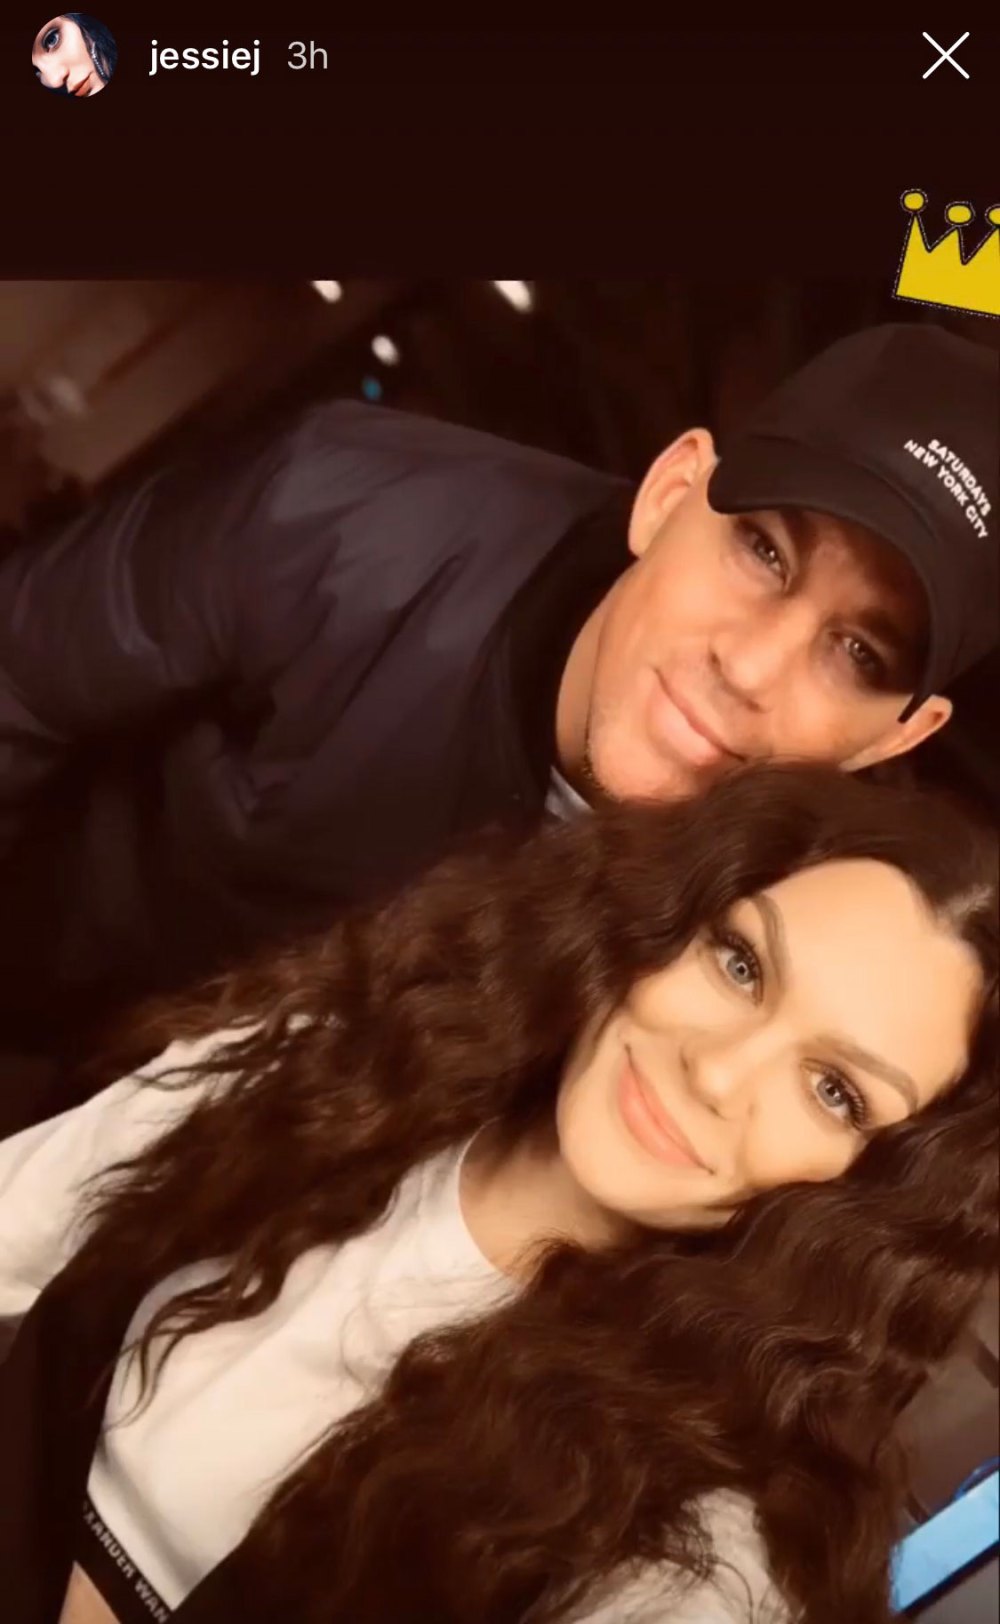 Jessie J Shares Photo With Boyfriend Channing Tatum Selfie